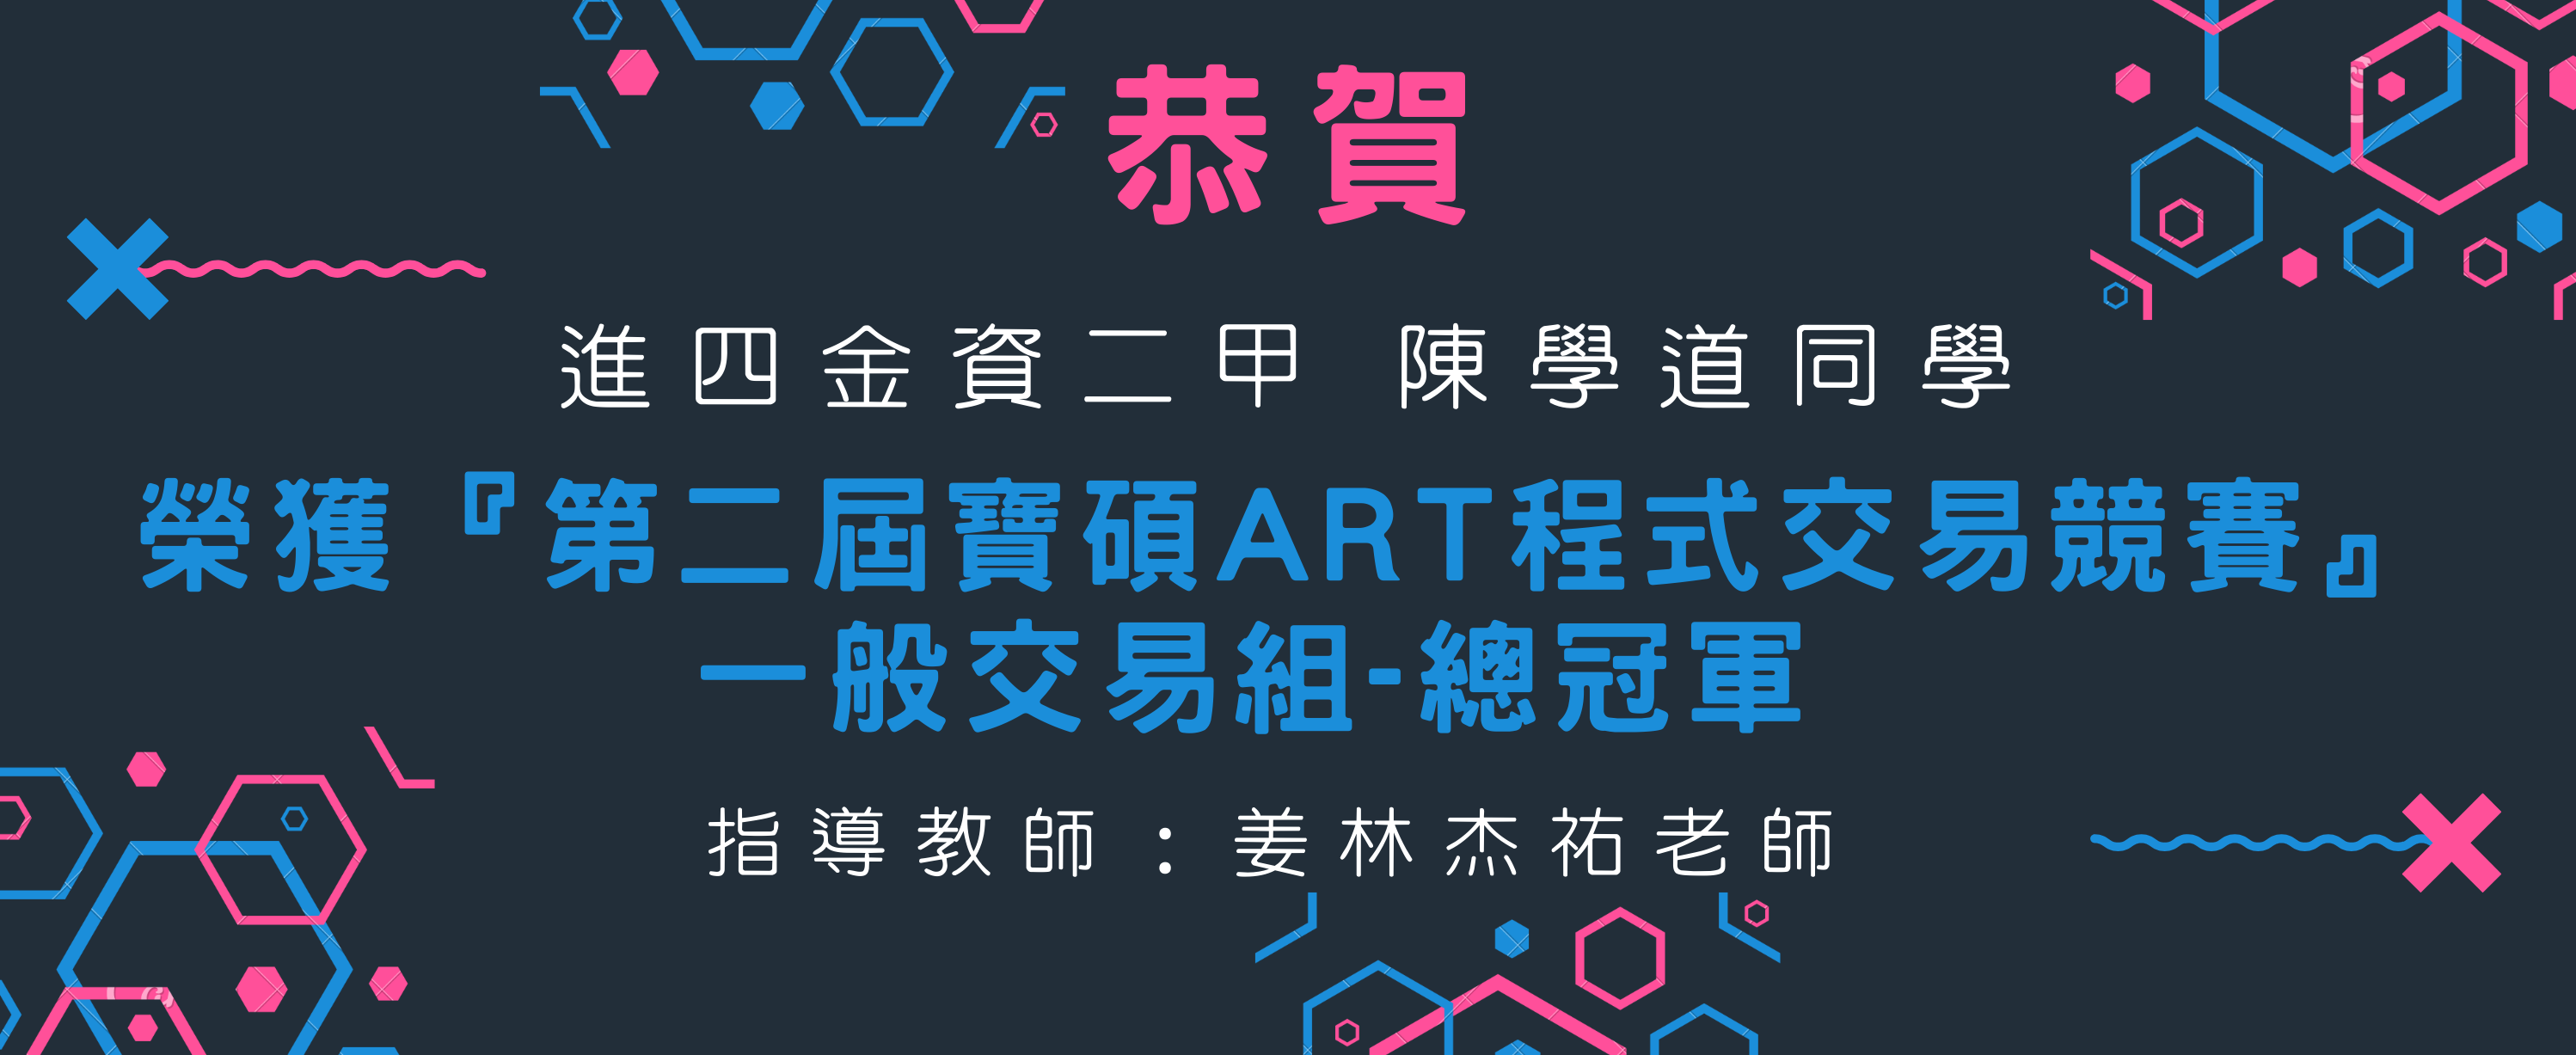 2021第二届宝硕ART程式交易竞赛